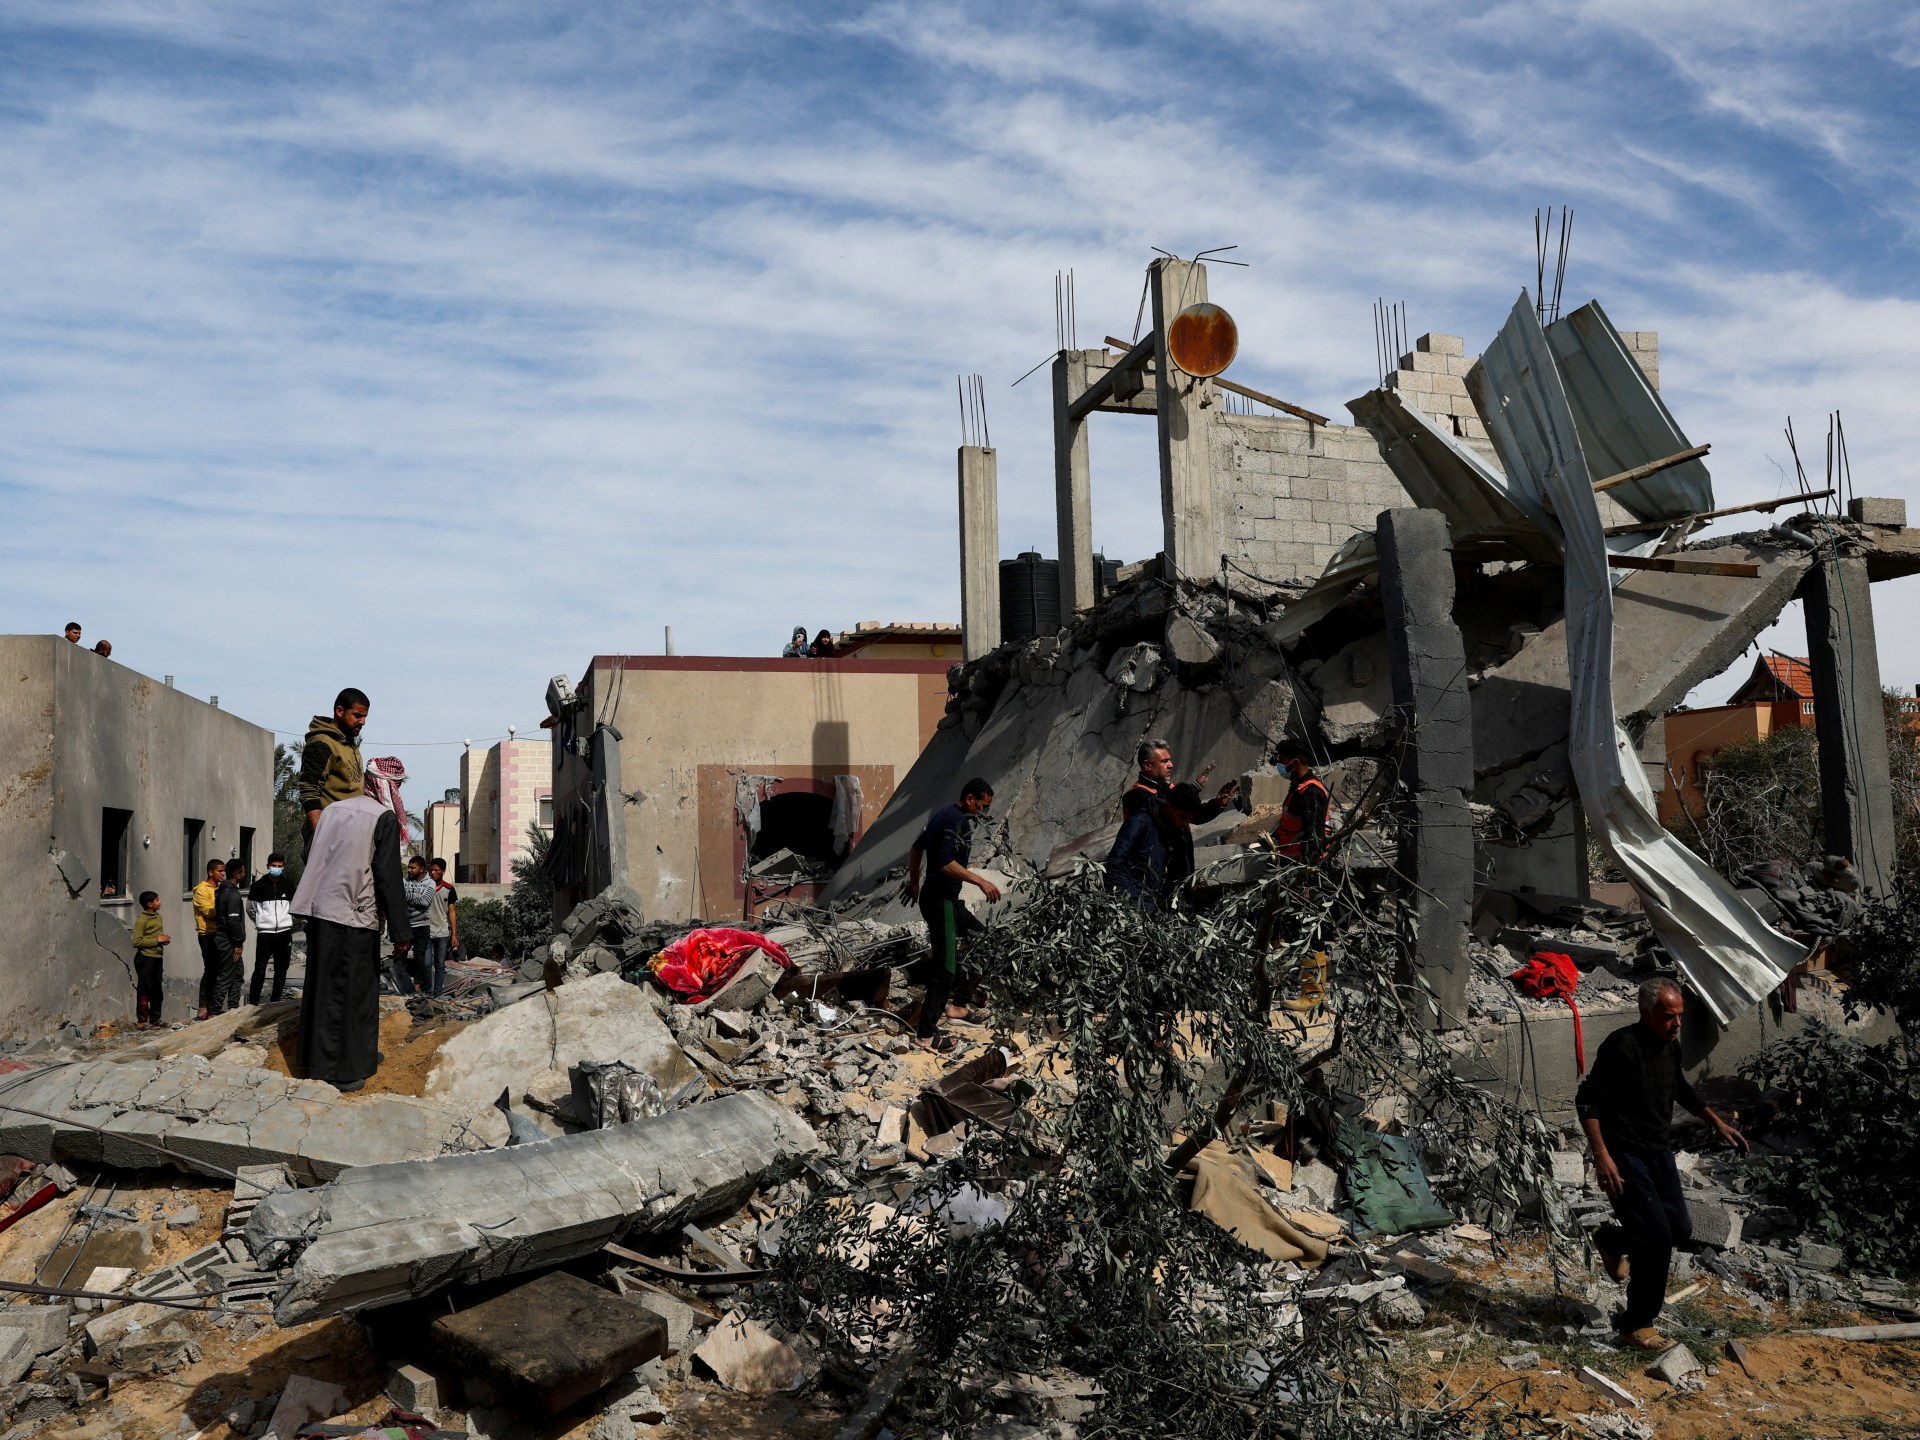 Izraelski nalot na Rafah zabija 14 Palestyńczyków, w tym wiele dzieci  Wiadomości o izraelskiej wojnie w Gazie